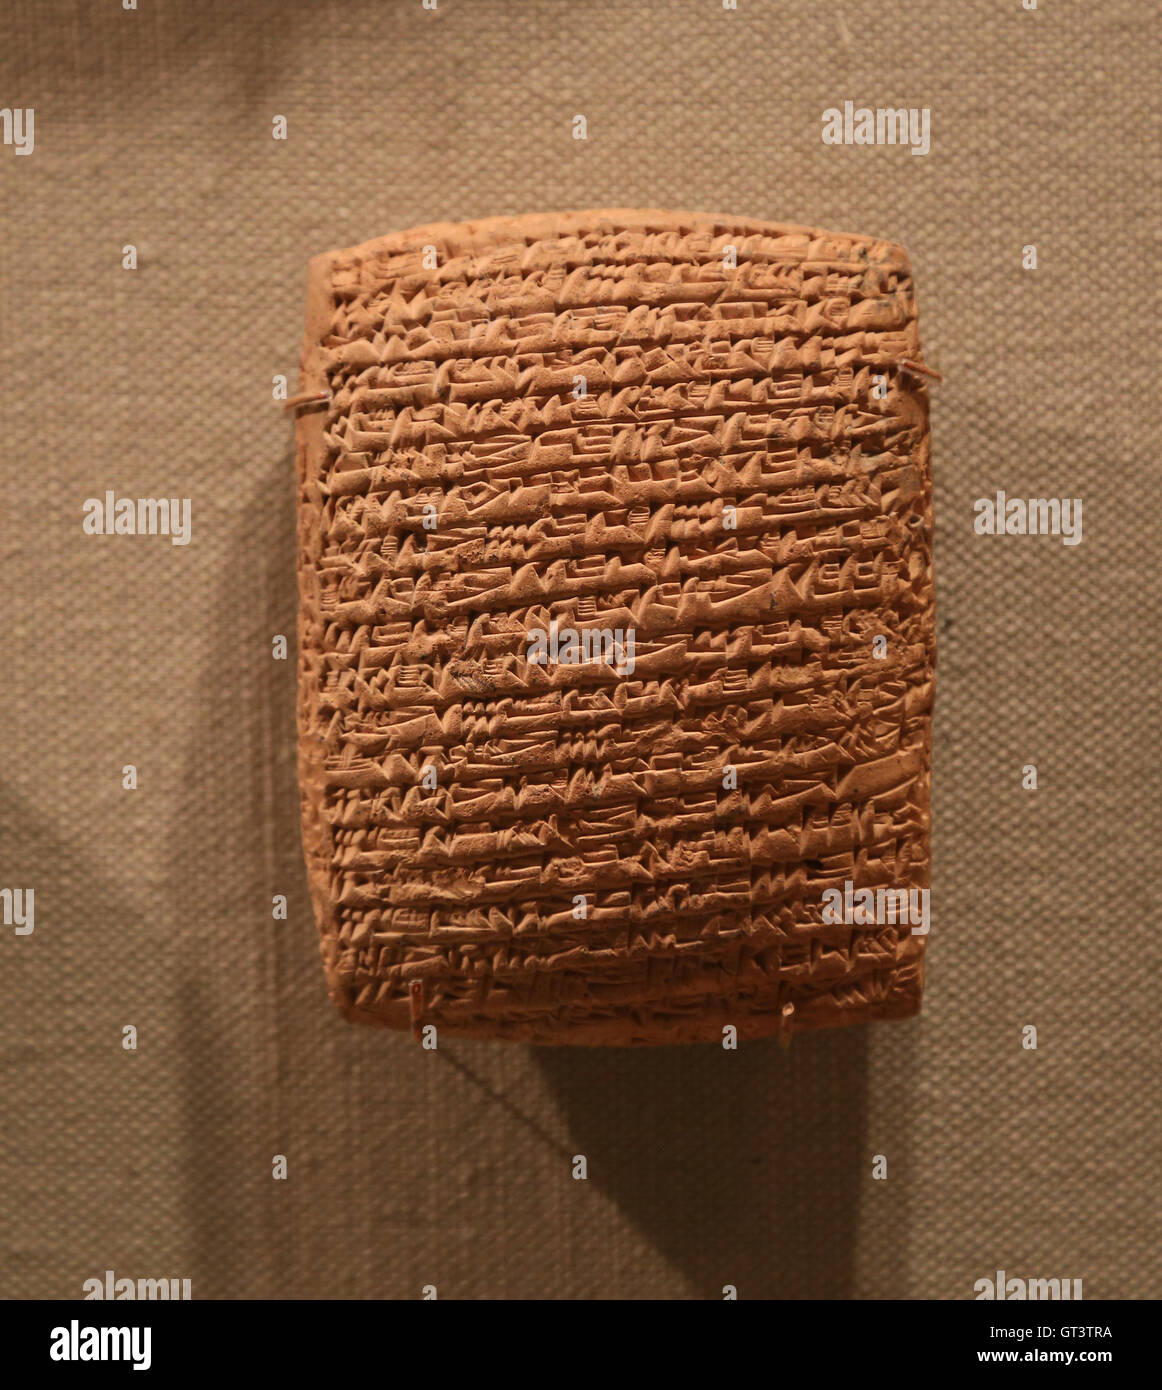 Tavoletta cuneiforme. Argilla. Vecchio assiro colonia di trading. Età del Bronzo medio. 20th del XIX secolo A.C. Foto Stock